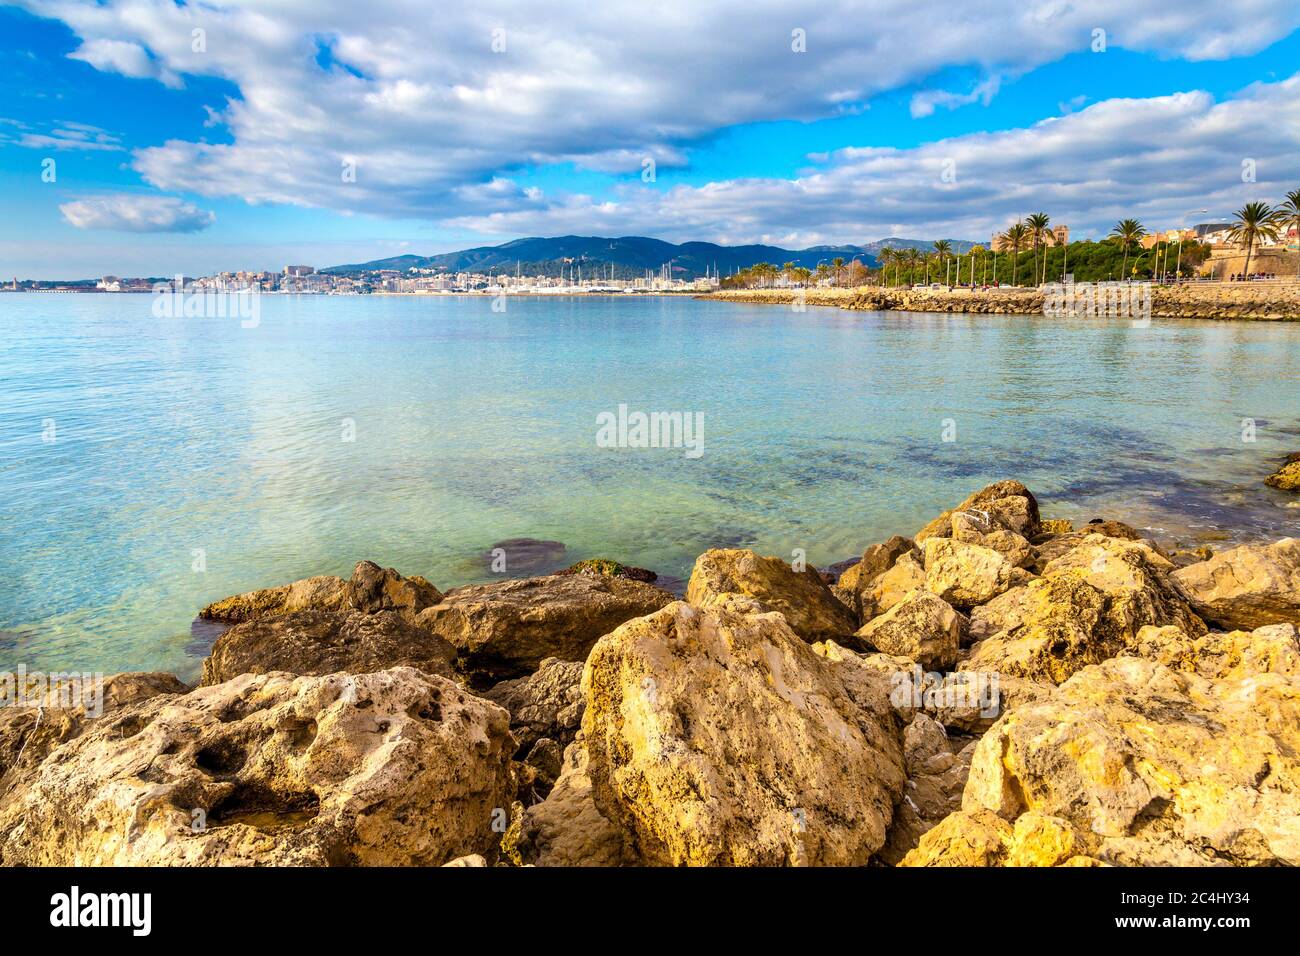 View of Palma for Platja de Can Pere Antoni beach in Mallorca, Spain Stock Photo